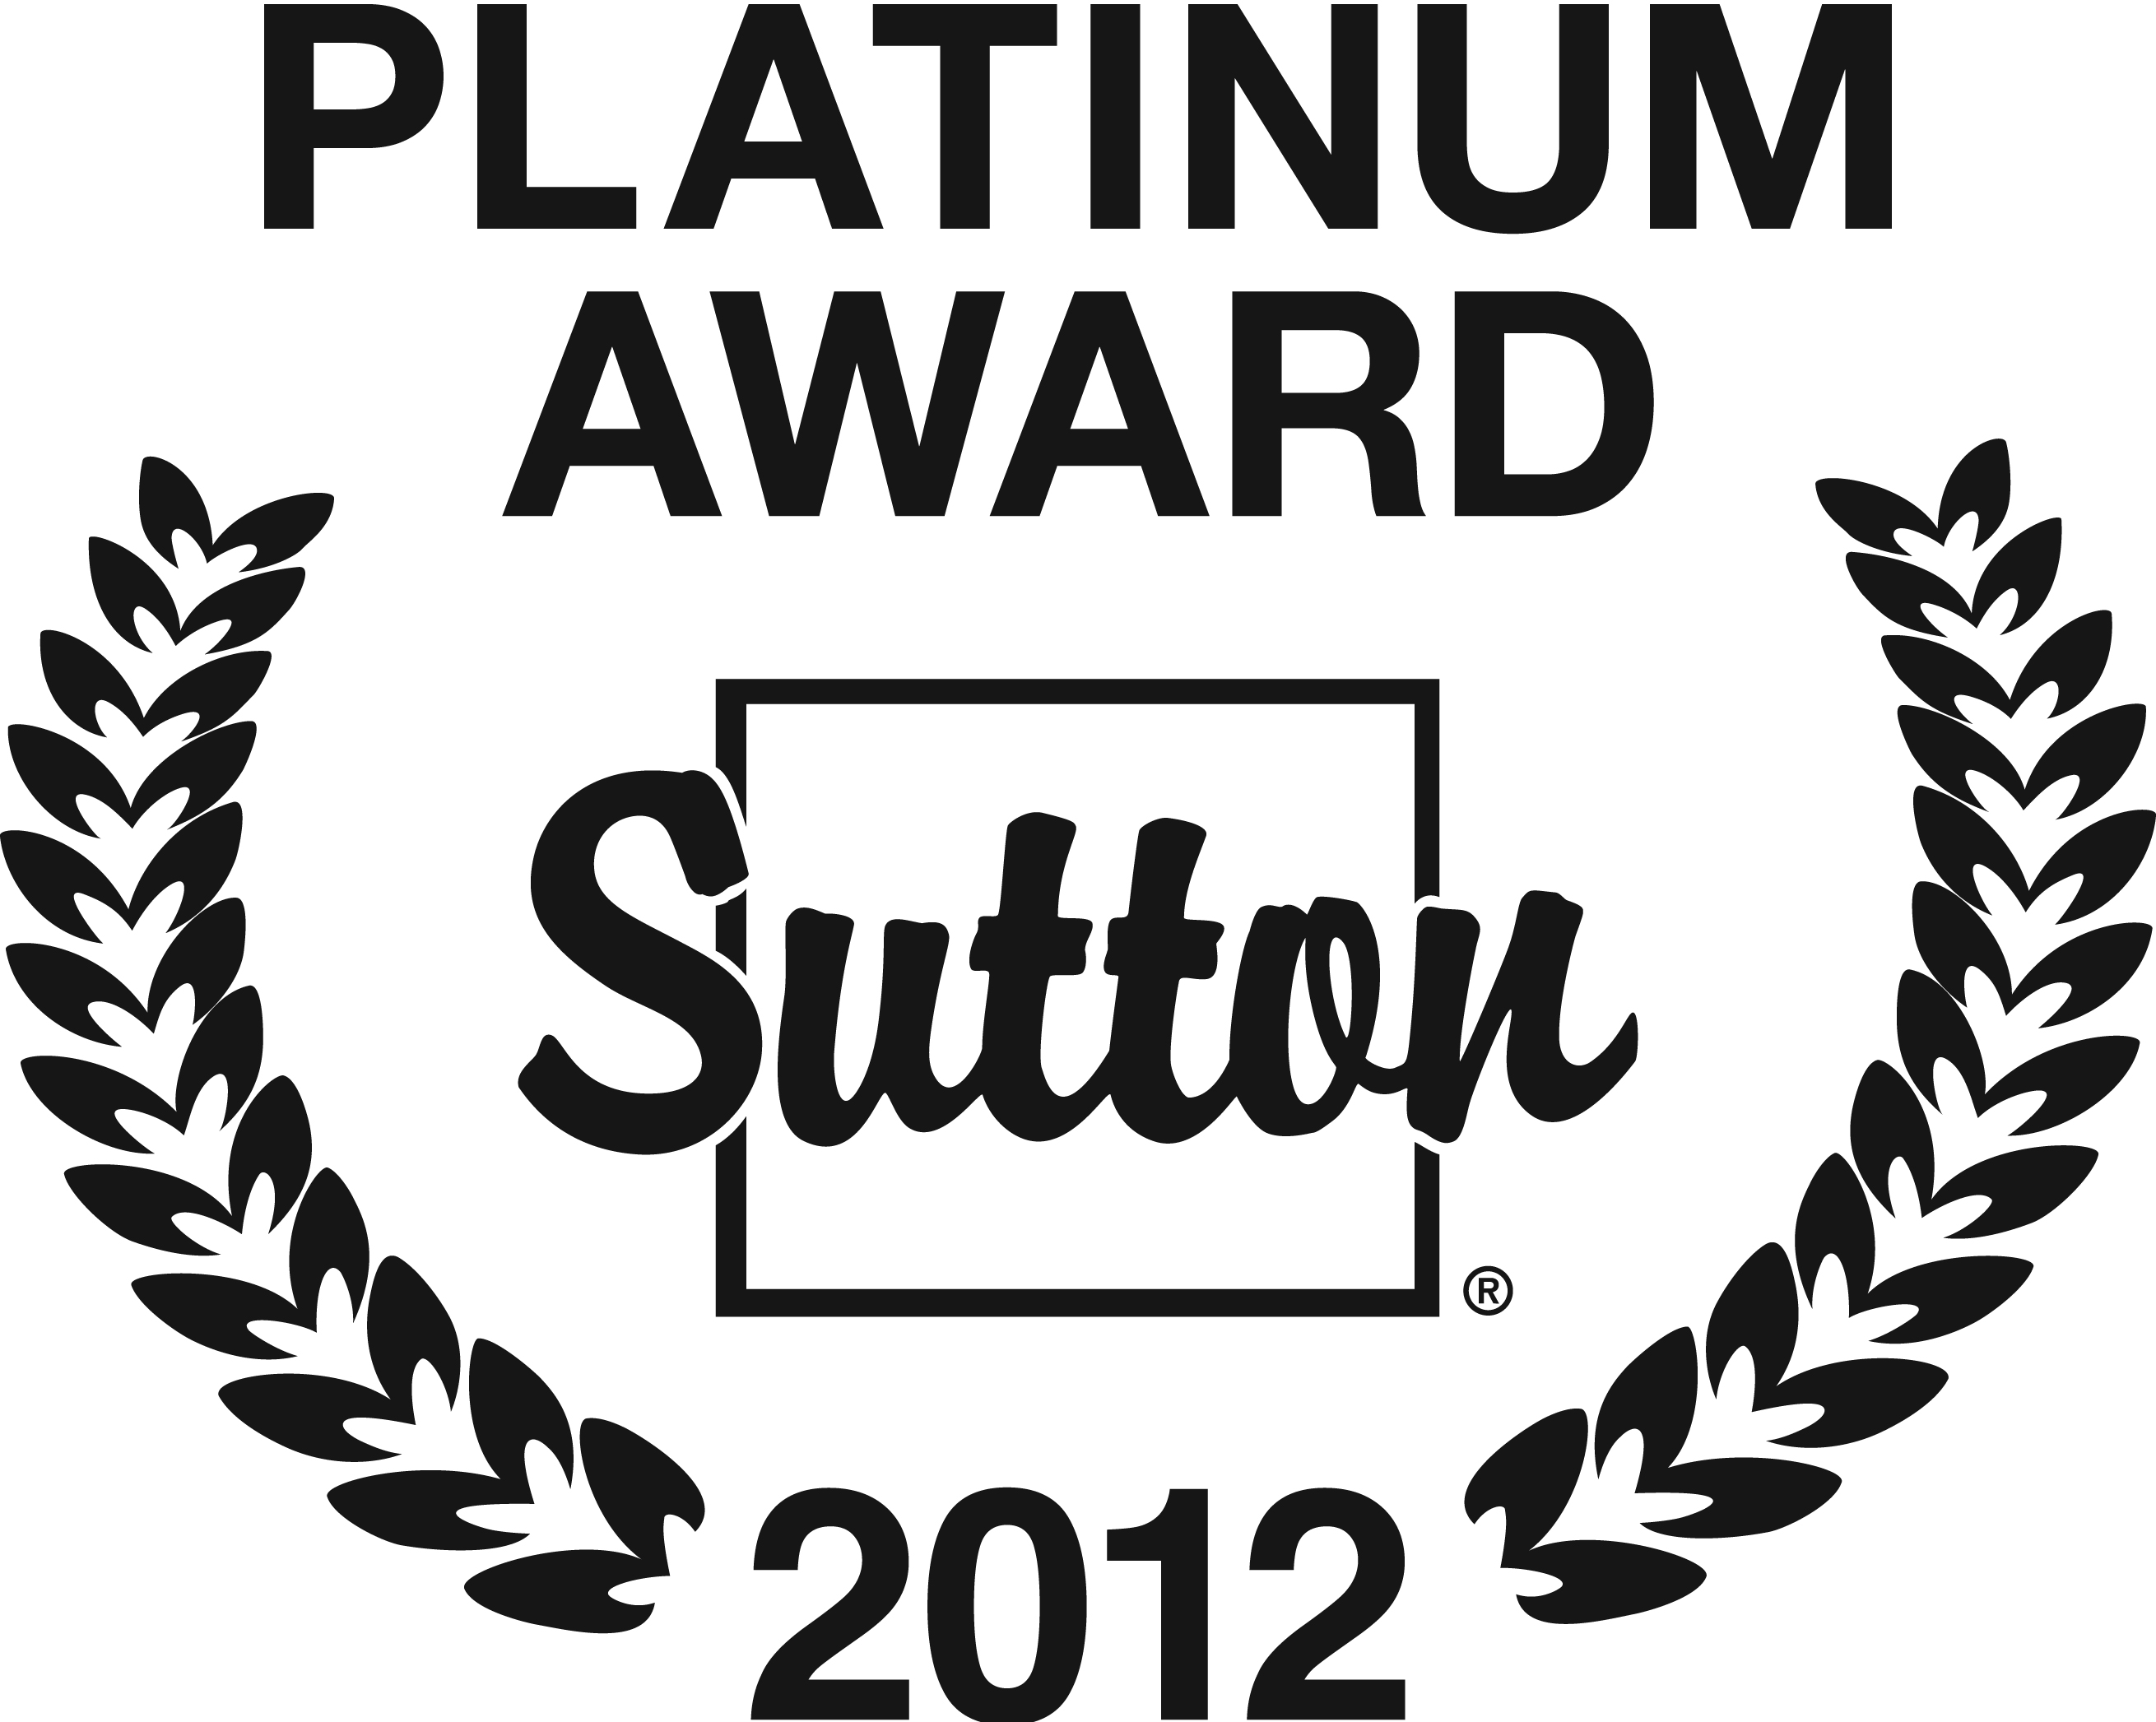 Platinum Award 2012